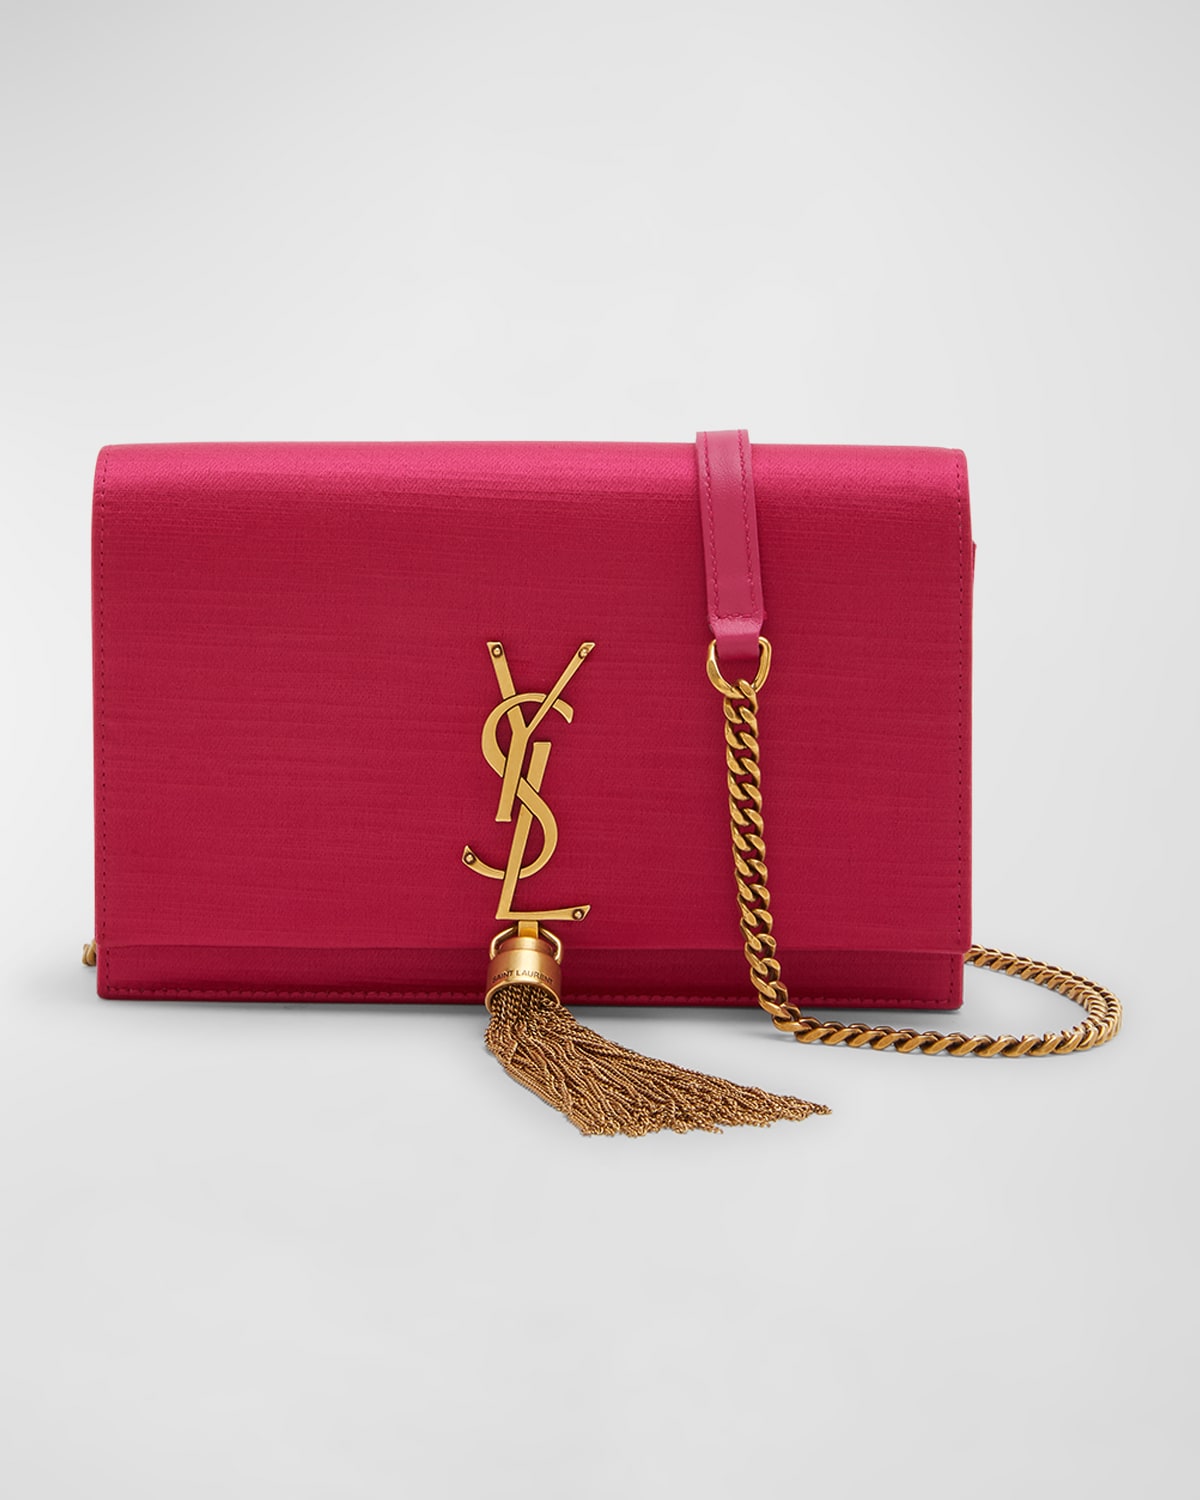 Saint Laurent YSL Small Kate Polka Dot Leather Shoulder Bag Pink Black Gold  NWT!